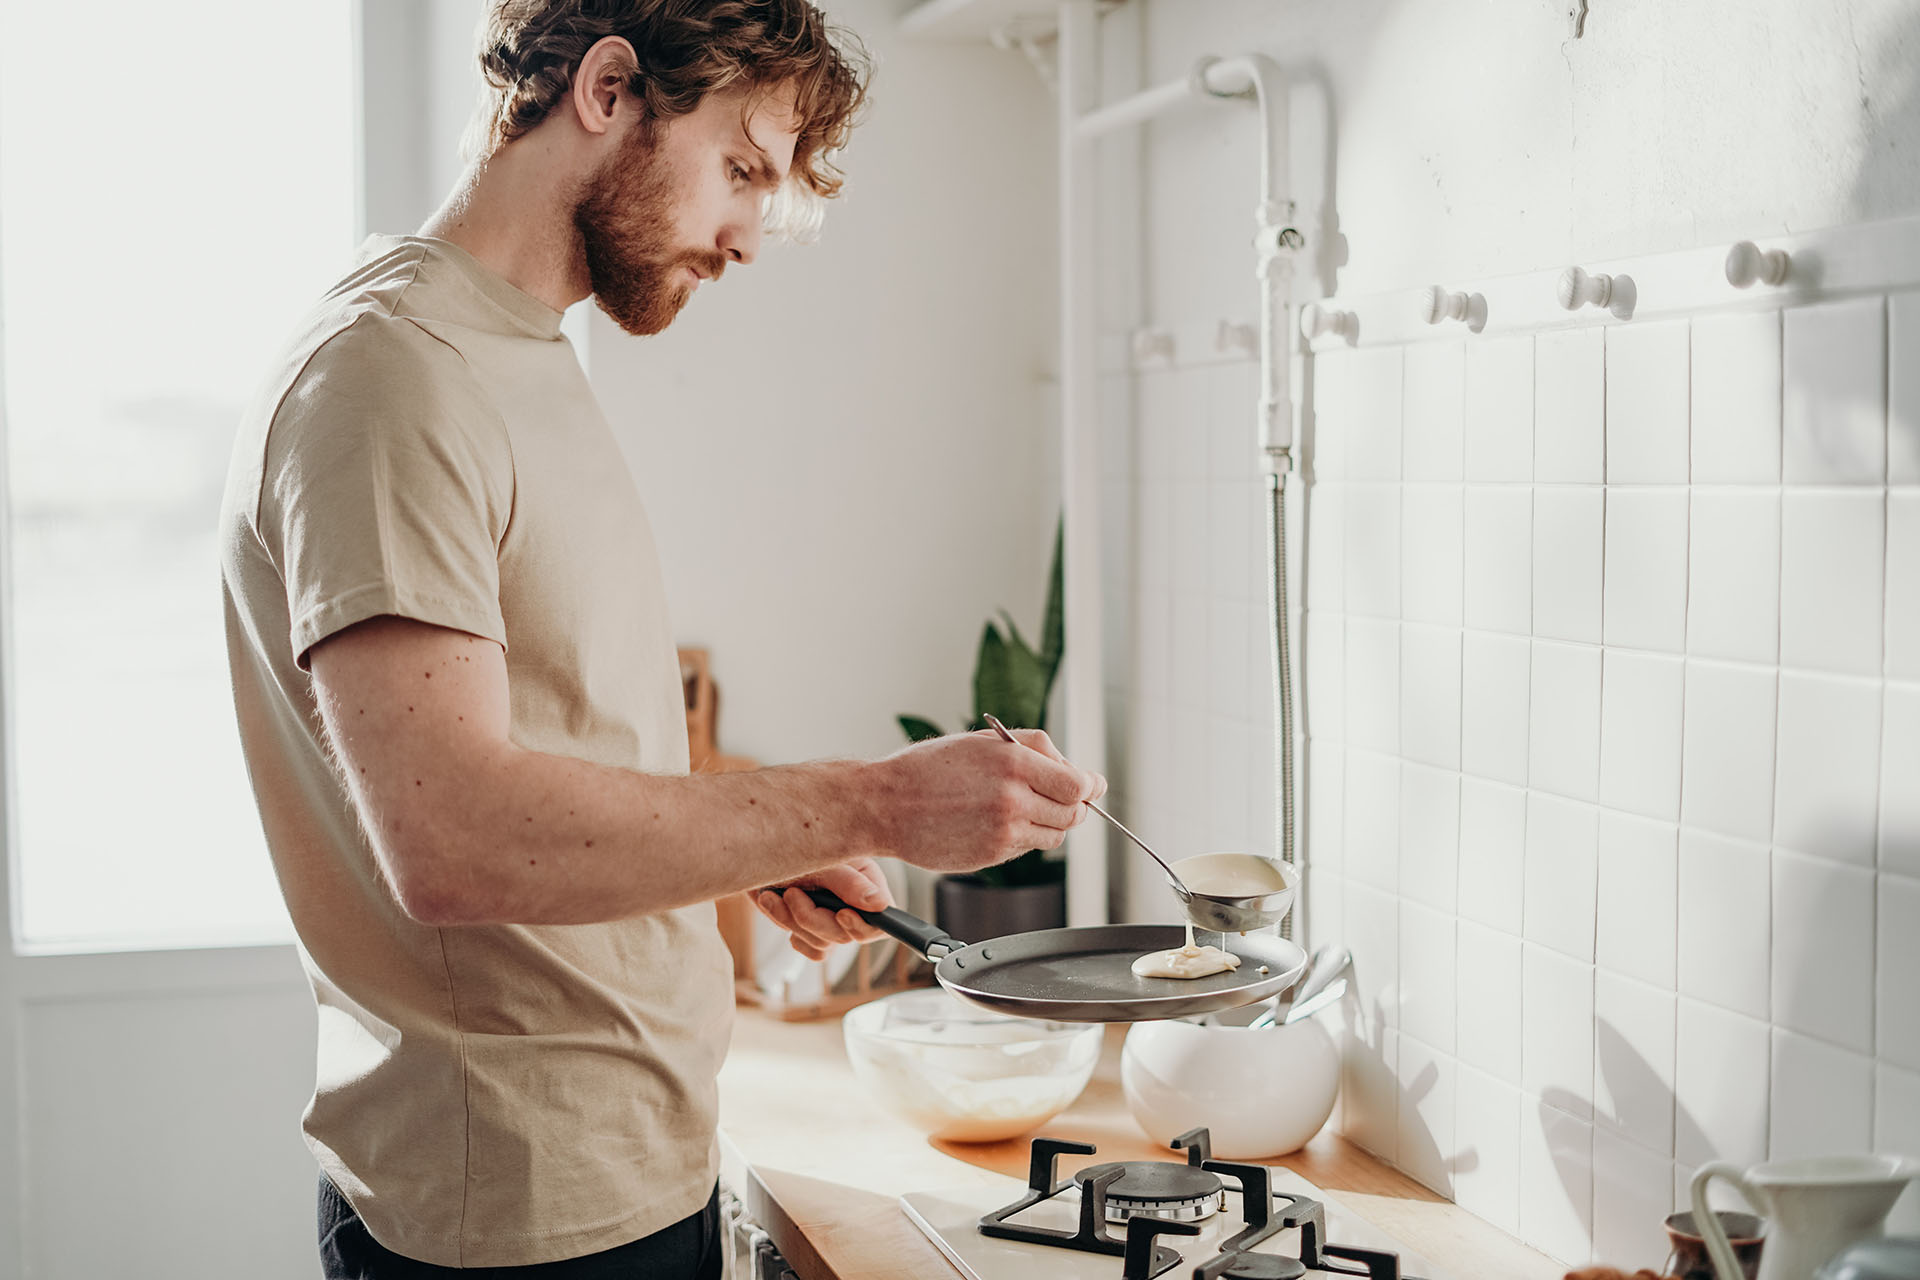 En kille i en beige kortärmad tröja står i ett kök med en stekpanna i handen